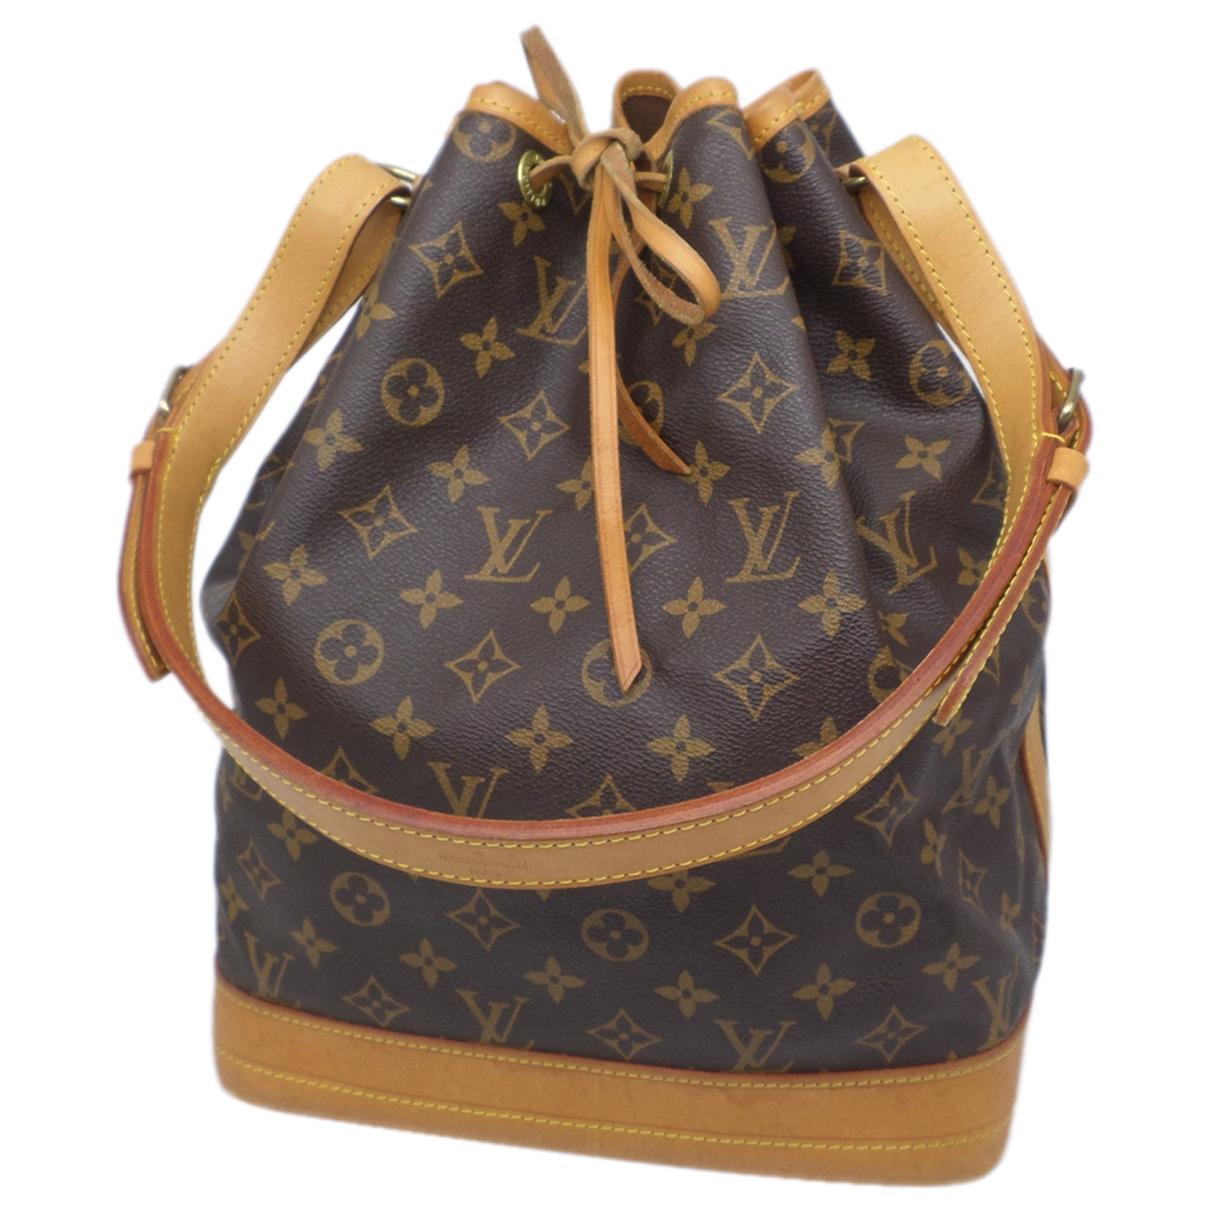 Graceful Louis Vuitton Bags - Vestiaire Collective